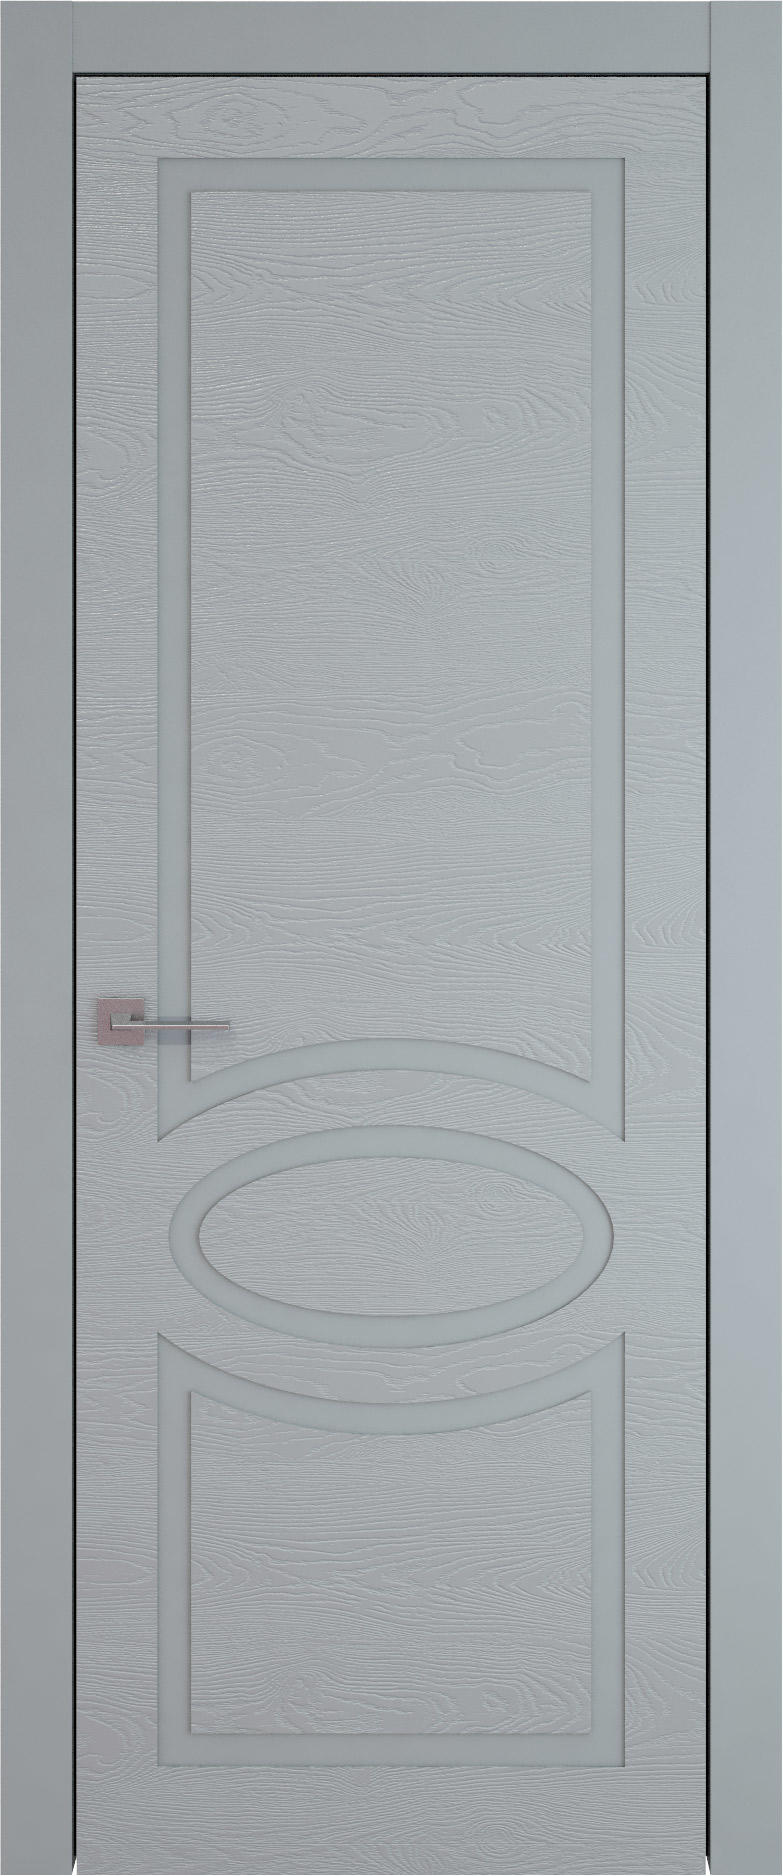 Tivoli Н-5 цвет - Серебристо-серая эмаль по шпону (RAL 7045) Без стекла (ДГ)